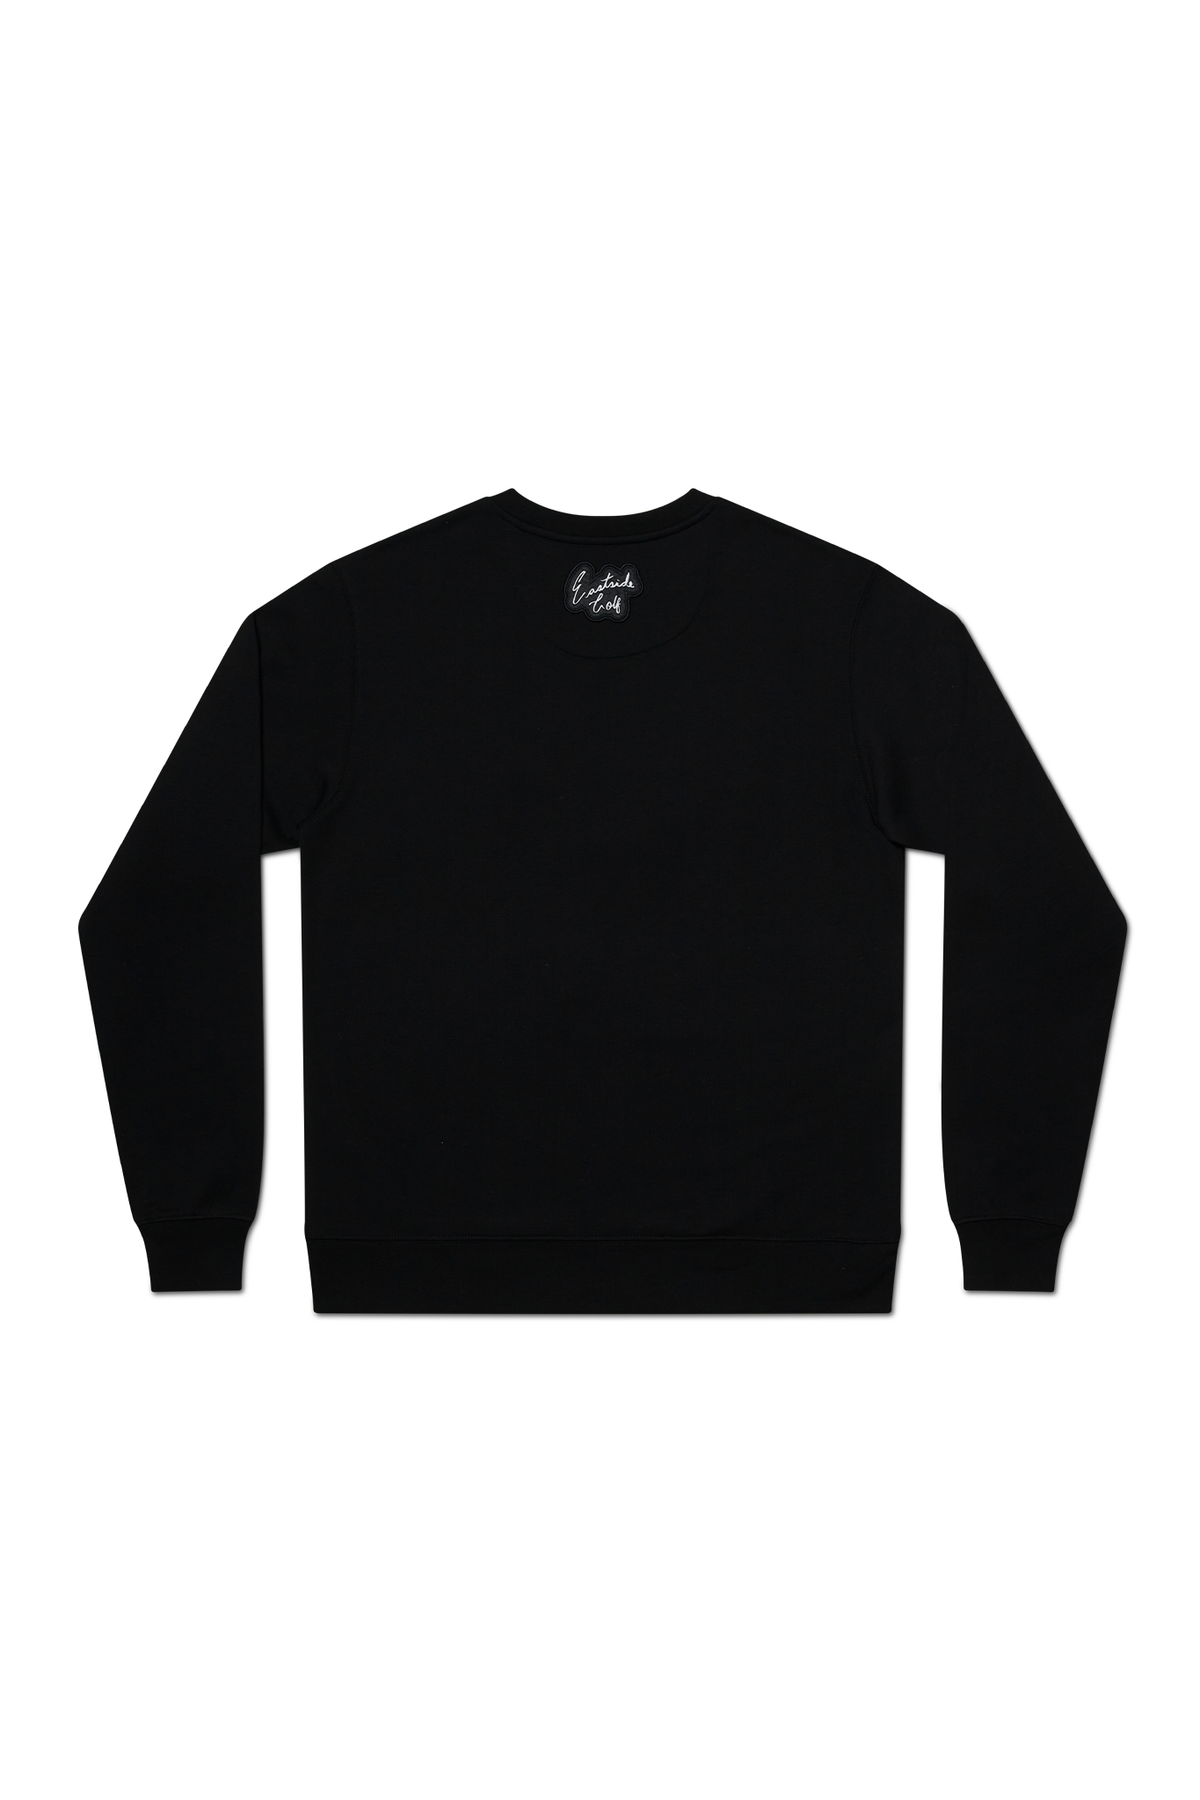 Eastside Golf Men's Core Sweatshirt Black